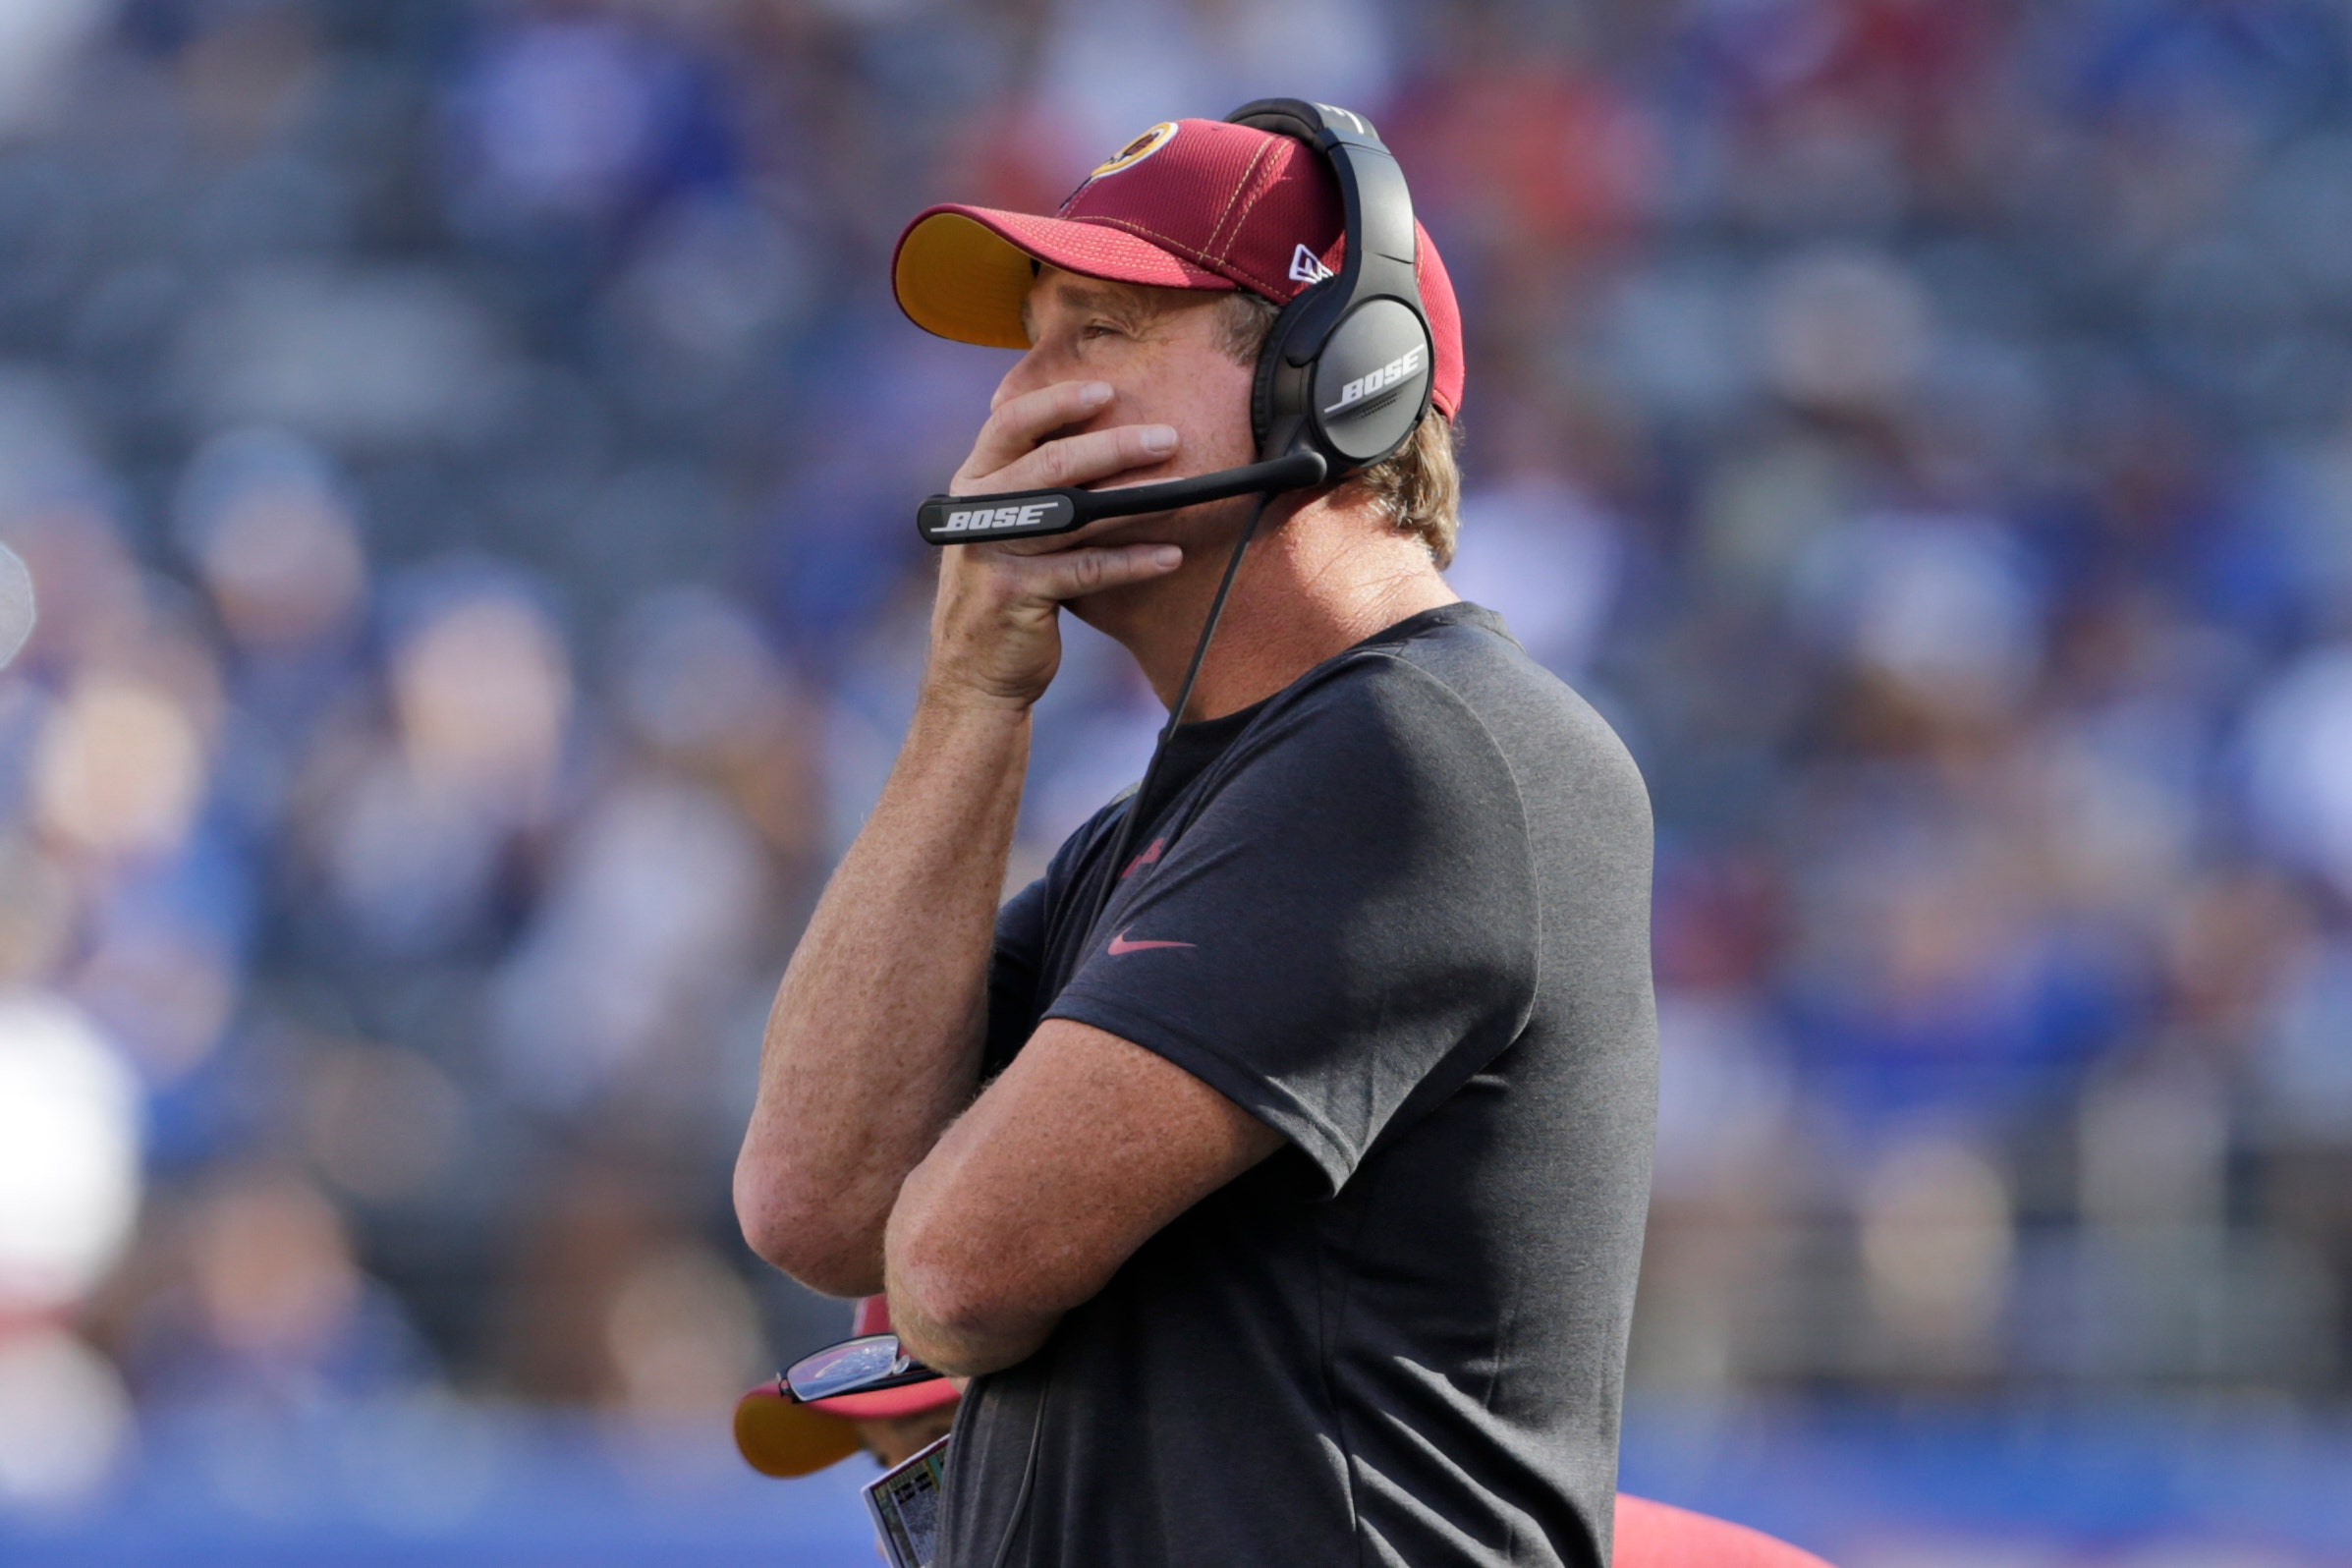 Redskins coach Jay Gruden fired Fox Business